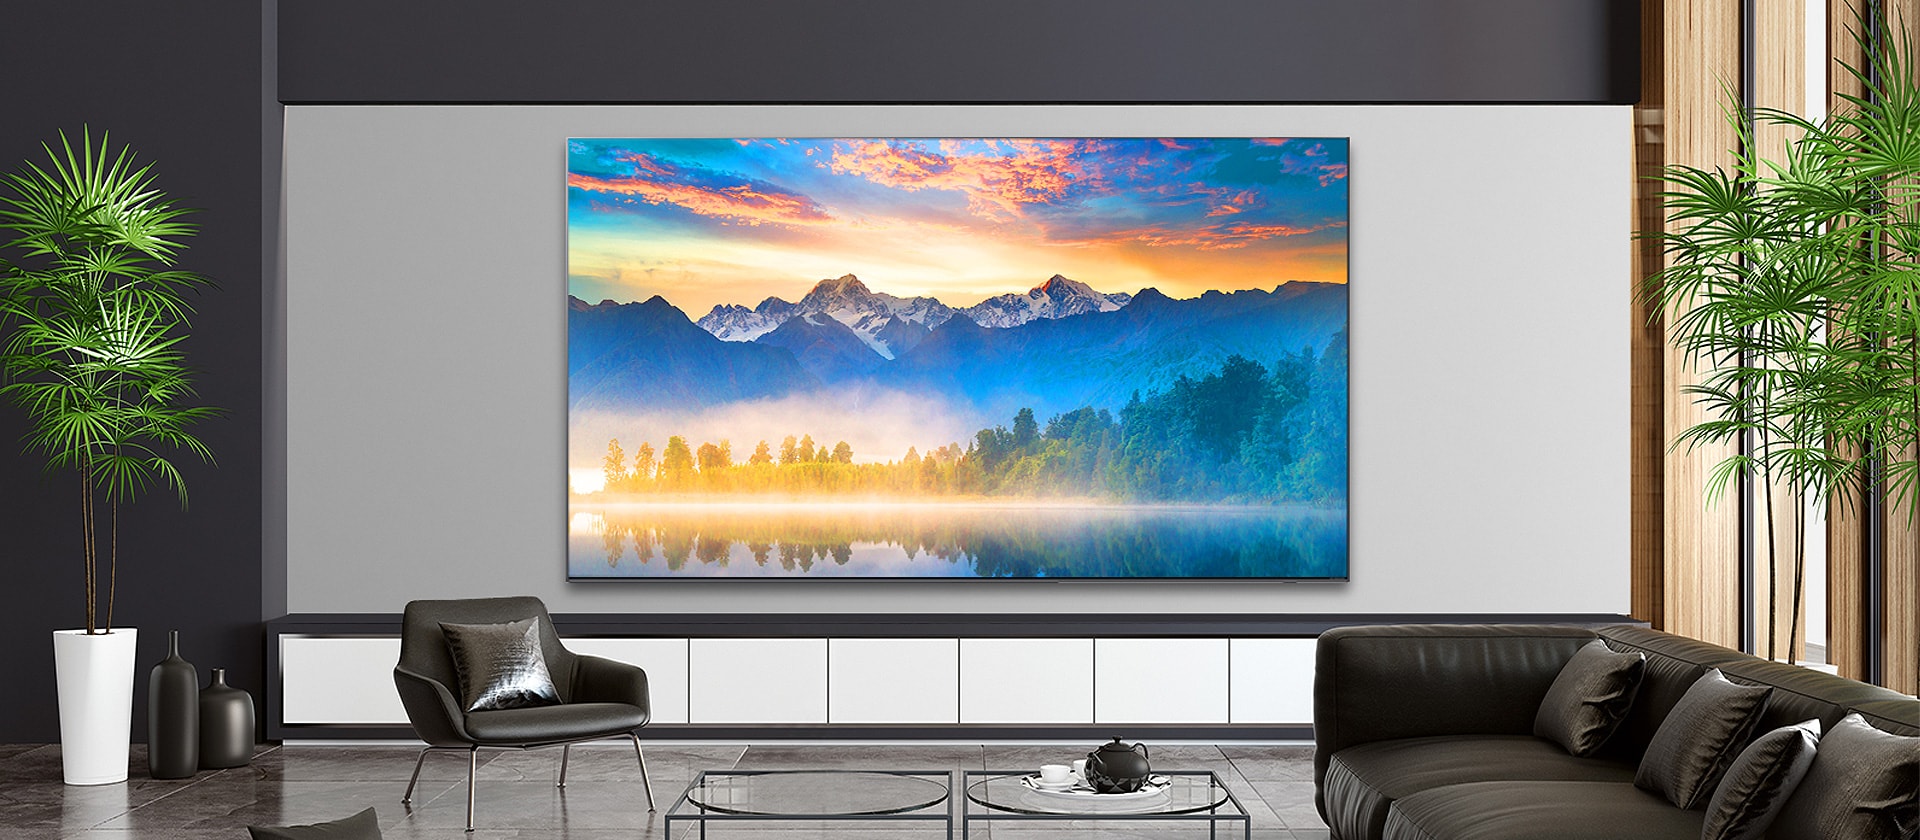 Obývací pokoj s televizorem na zdi, na kterém je vidět scéna z přírody.